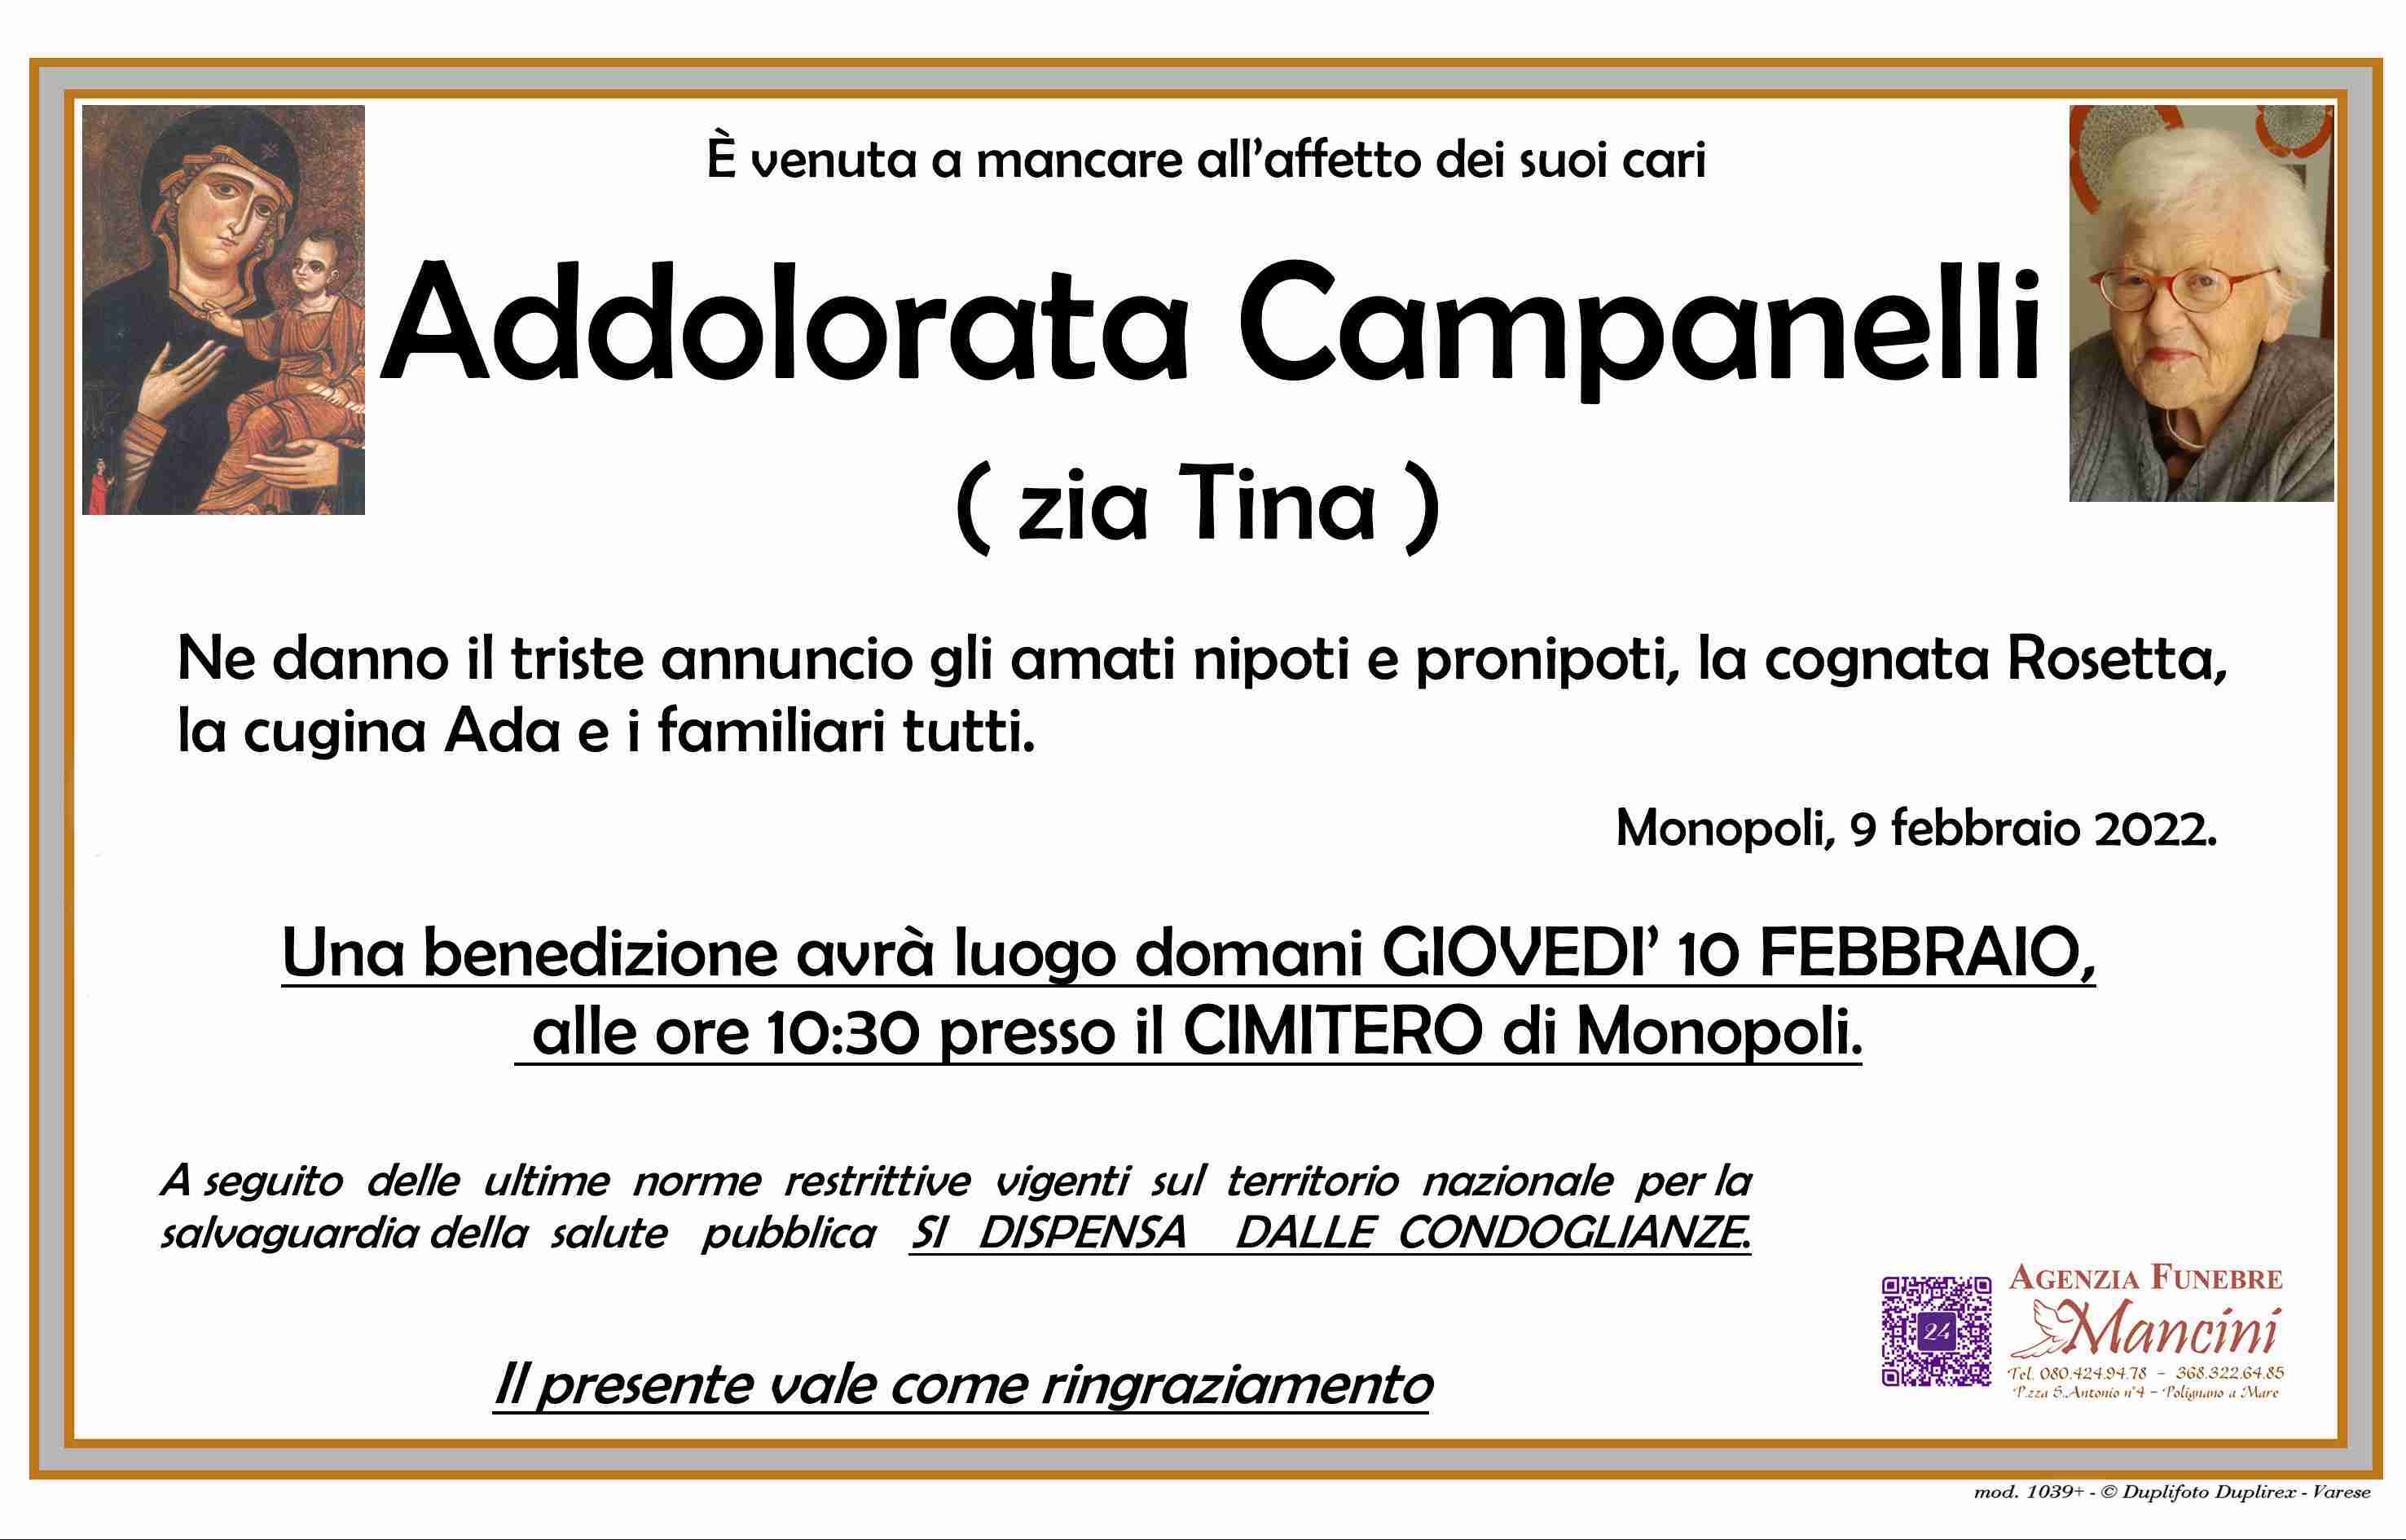 Addolorata Campanelli